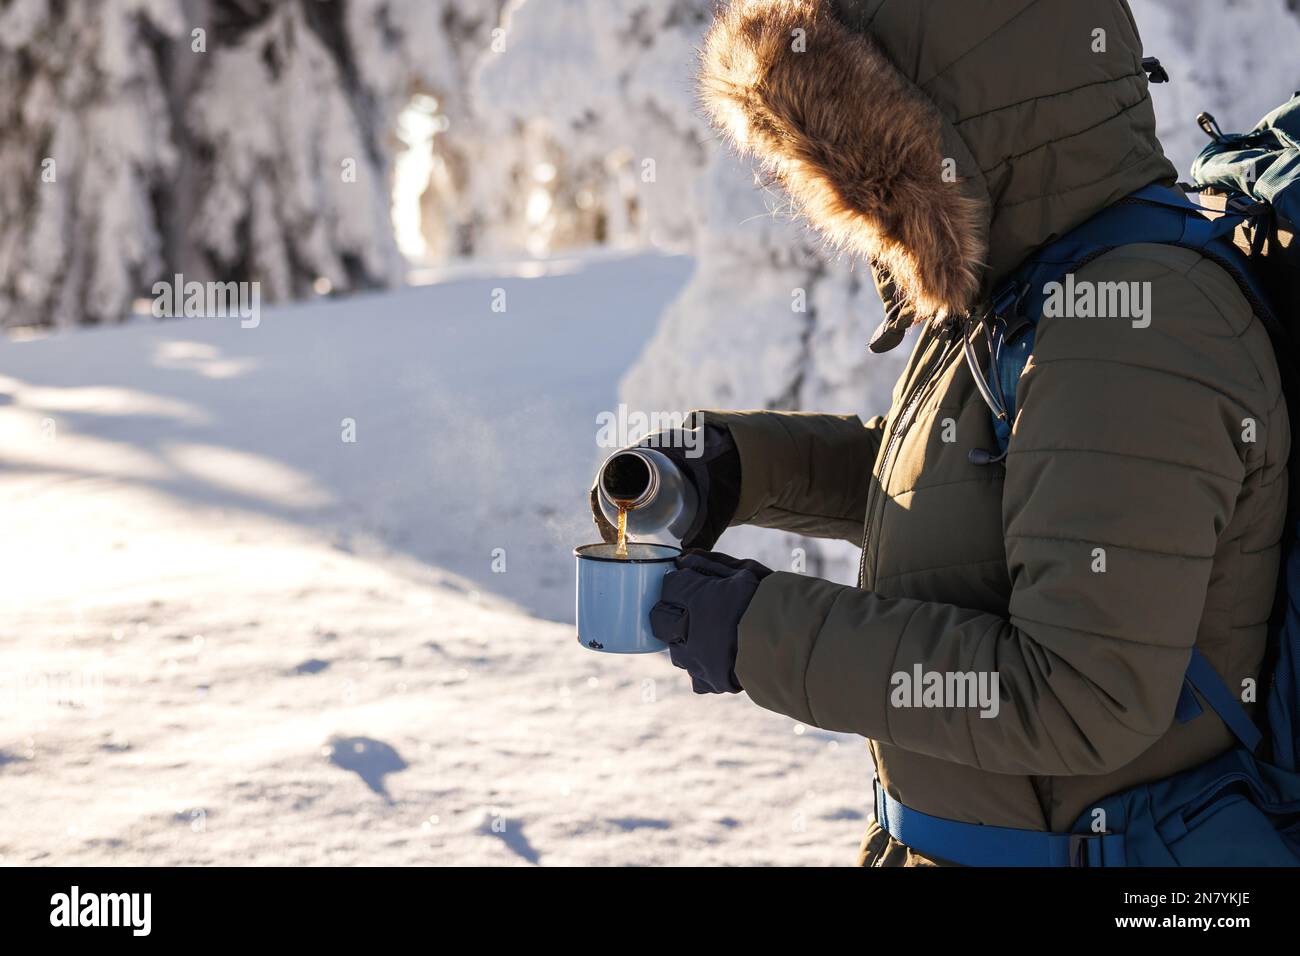 Escursionista che versa la bevanda calda dai thermos nella tazza da viaggio. Rinfresco durante il trekking invernale nelle giornate fredde Foto Stock